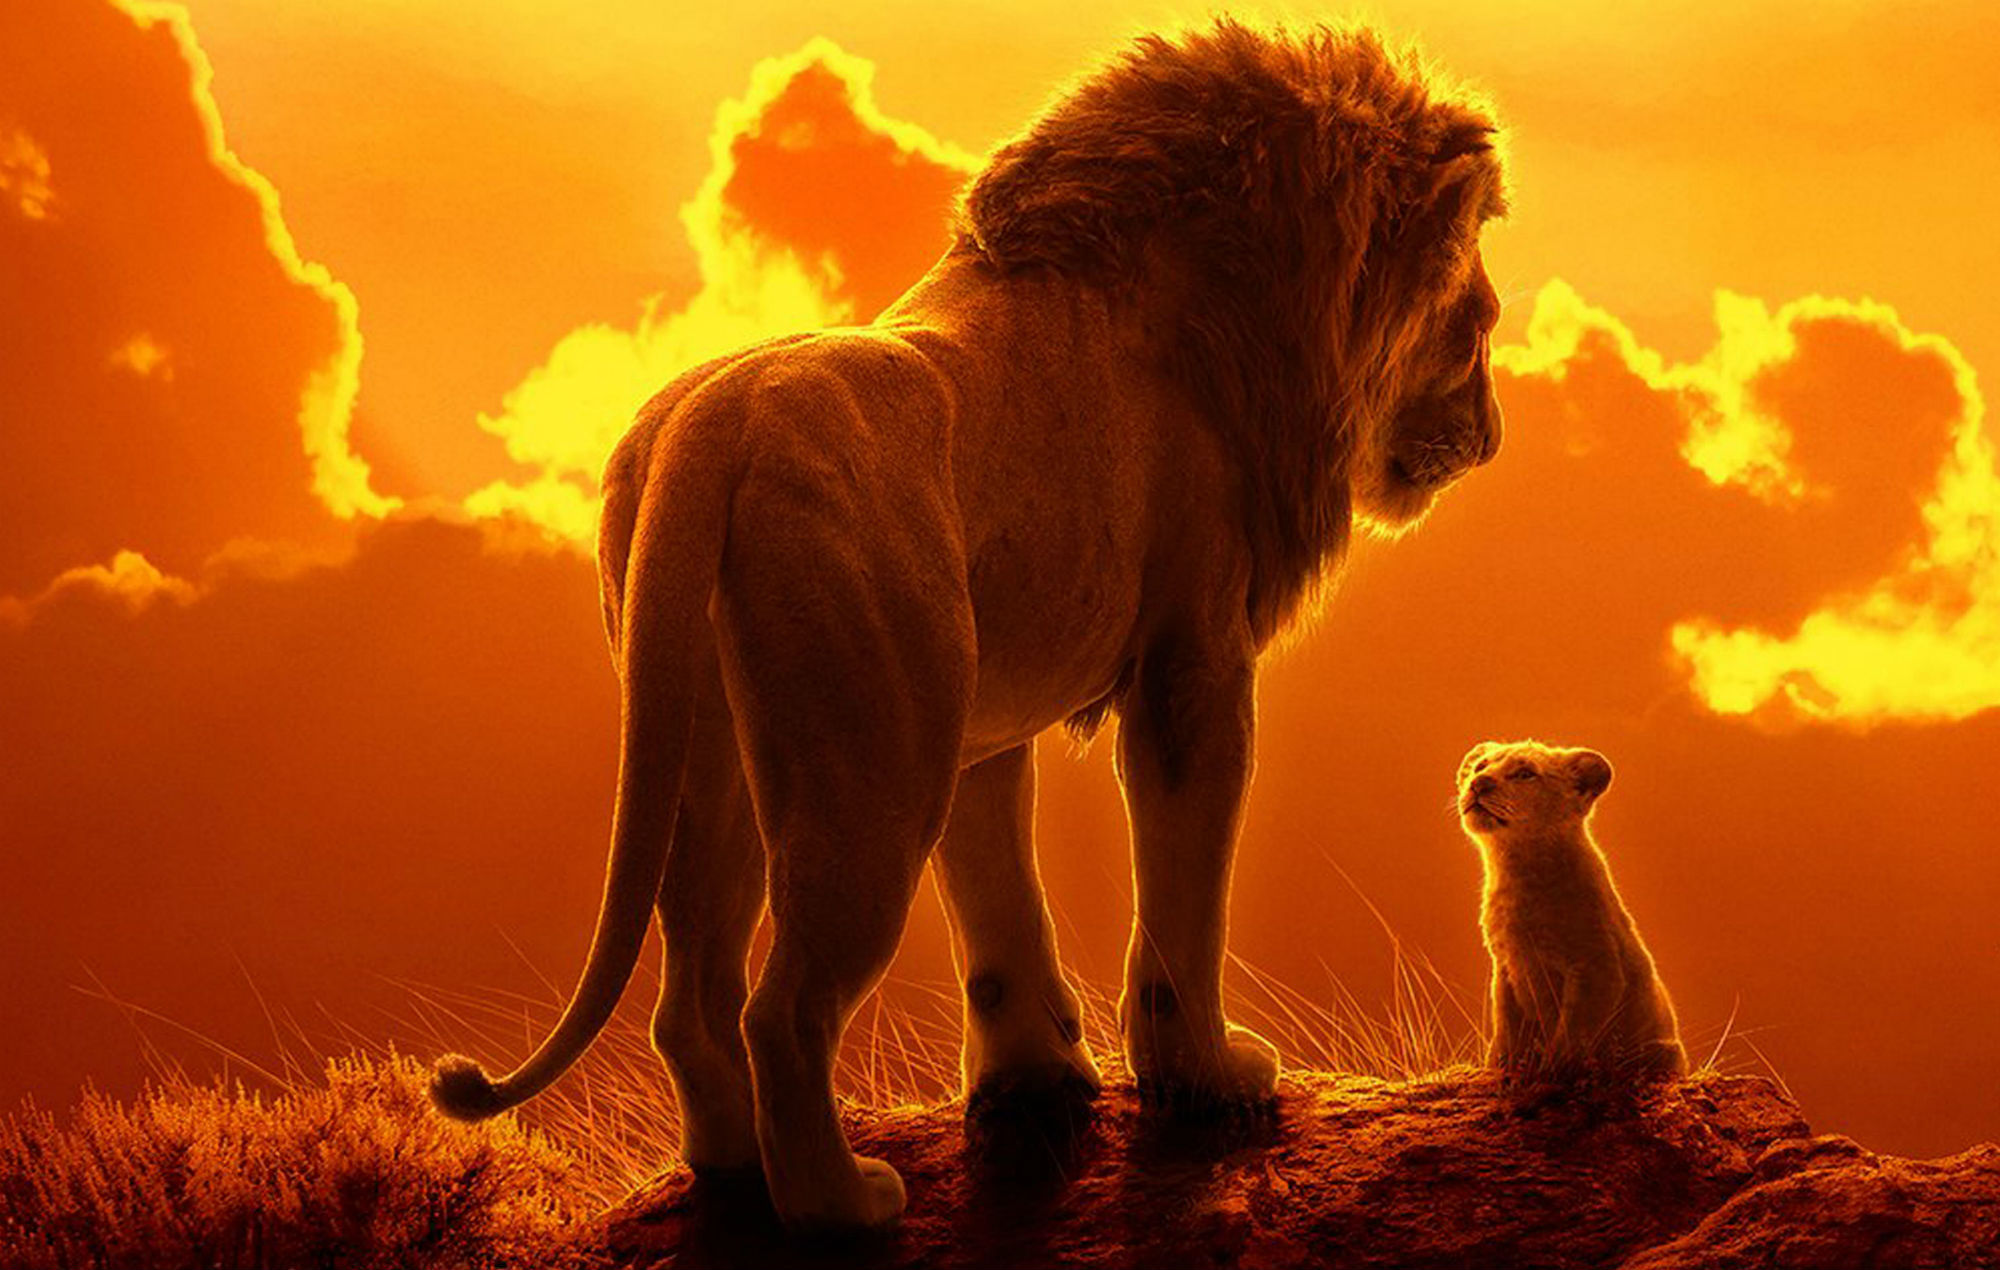 Jon Favreau quase atinge a perfeição em sua versão de “O Rei Leão”